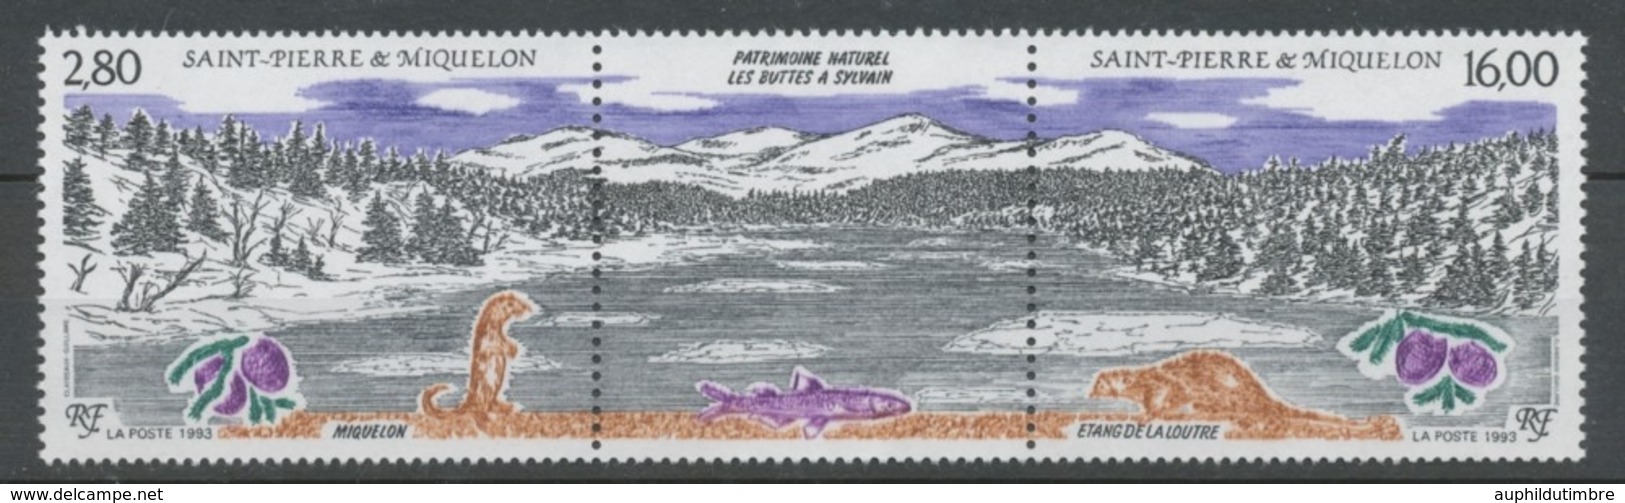 SPM  N°586A Patrimoine Naturel Des Iles St-Pierre-et-Miquelon Le Triptyque Avec Vignette Centrale ZC586A - Nuevos